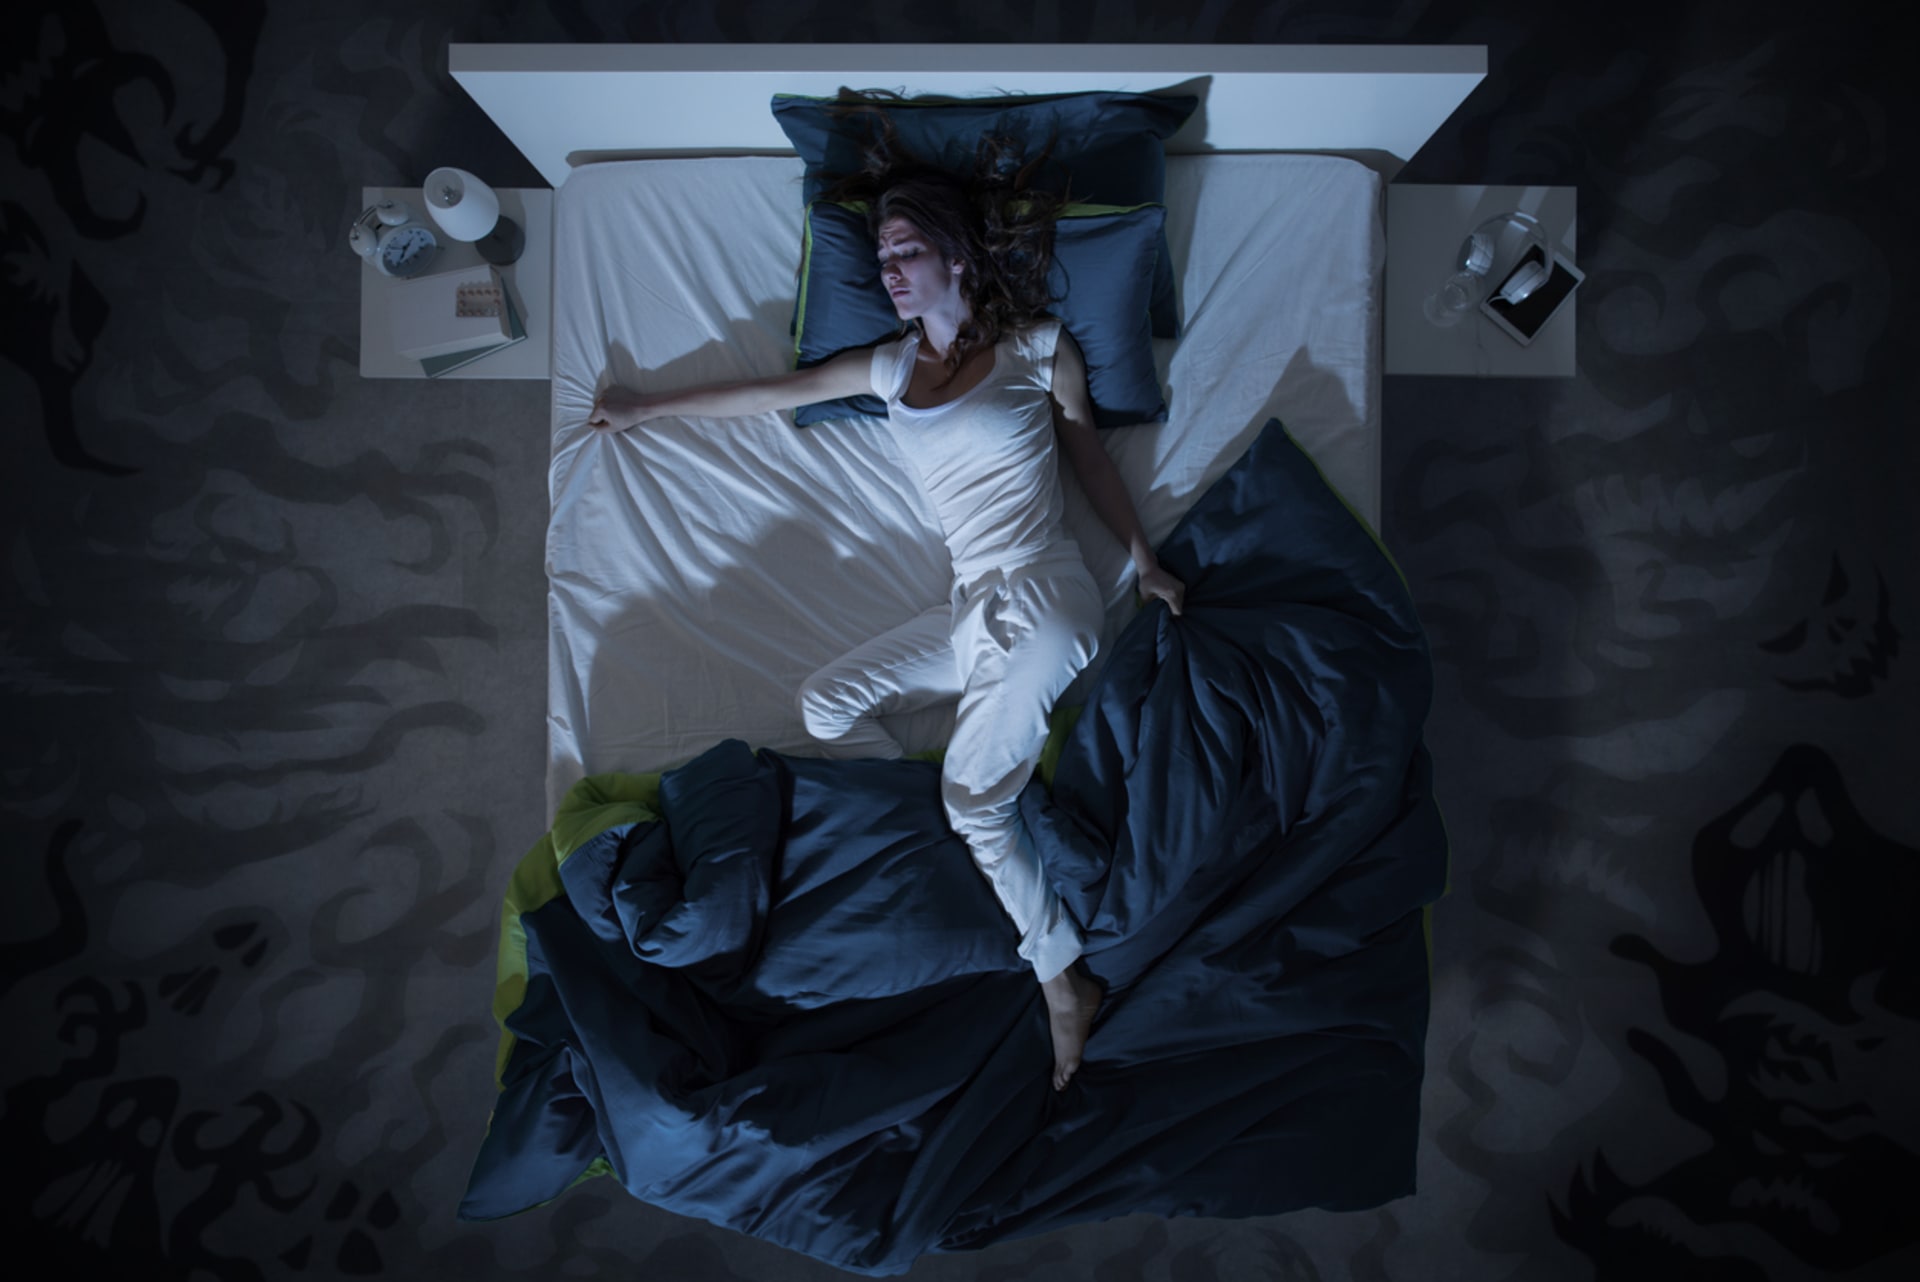 Lucidní snění během noční můry nám může pomoci se z ní „vyléčit“.